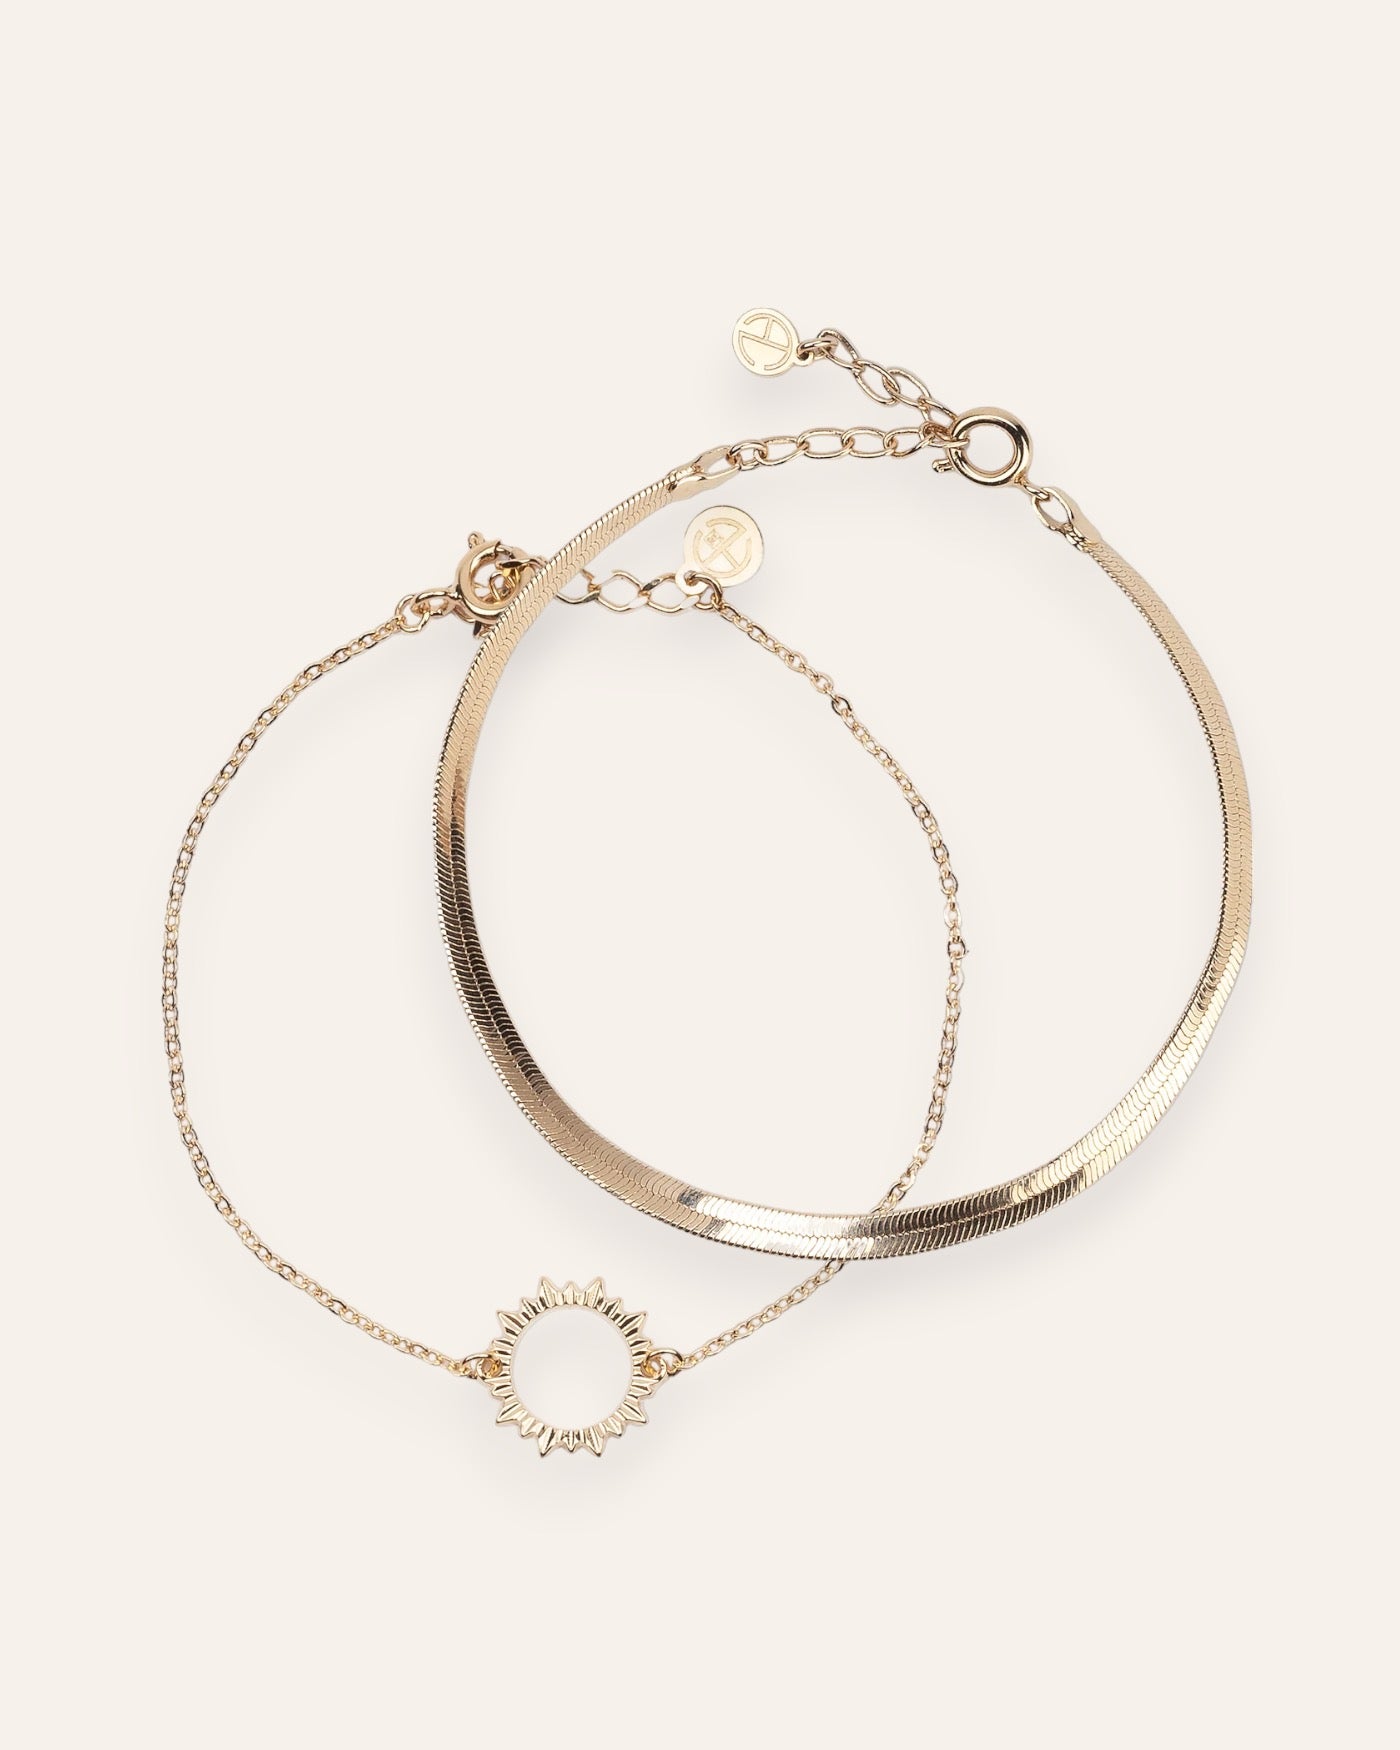 Composition de deux bracelets, avec un bracelet en chaîne fine habillé d'un soleil ajouré, et un bracelet en chaîne plate en plaqué or 18 carats.